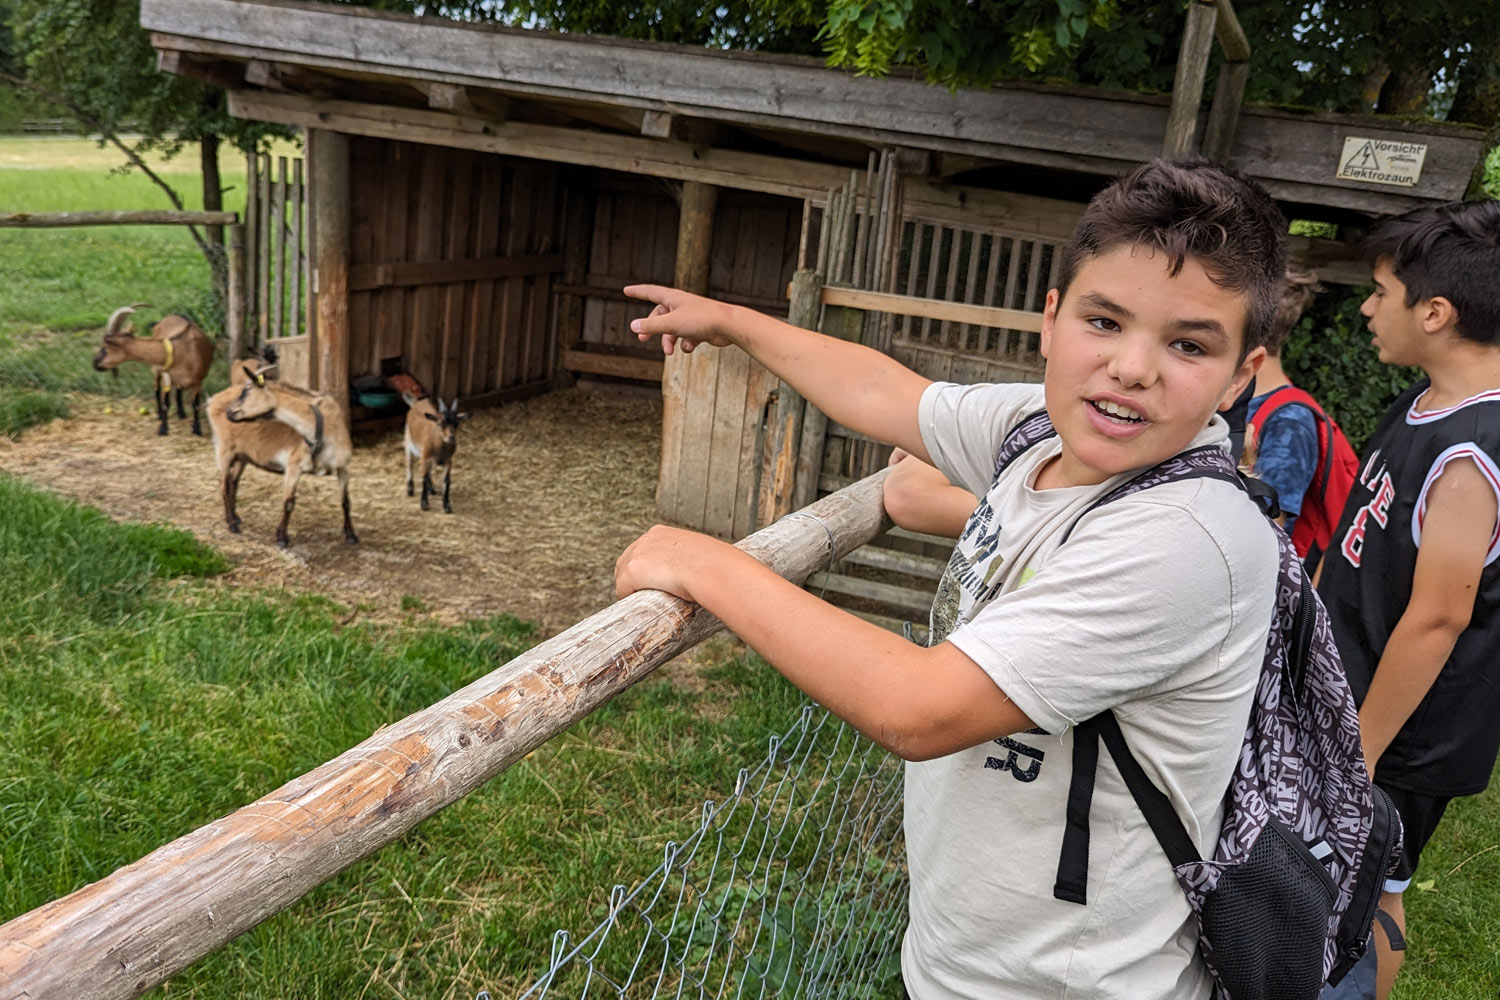 Ziegen stehen in einem Gehege und ein Junge zeigt auf diese hinter einem Zaun